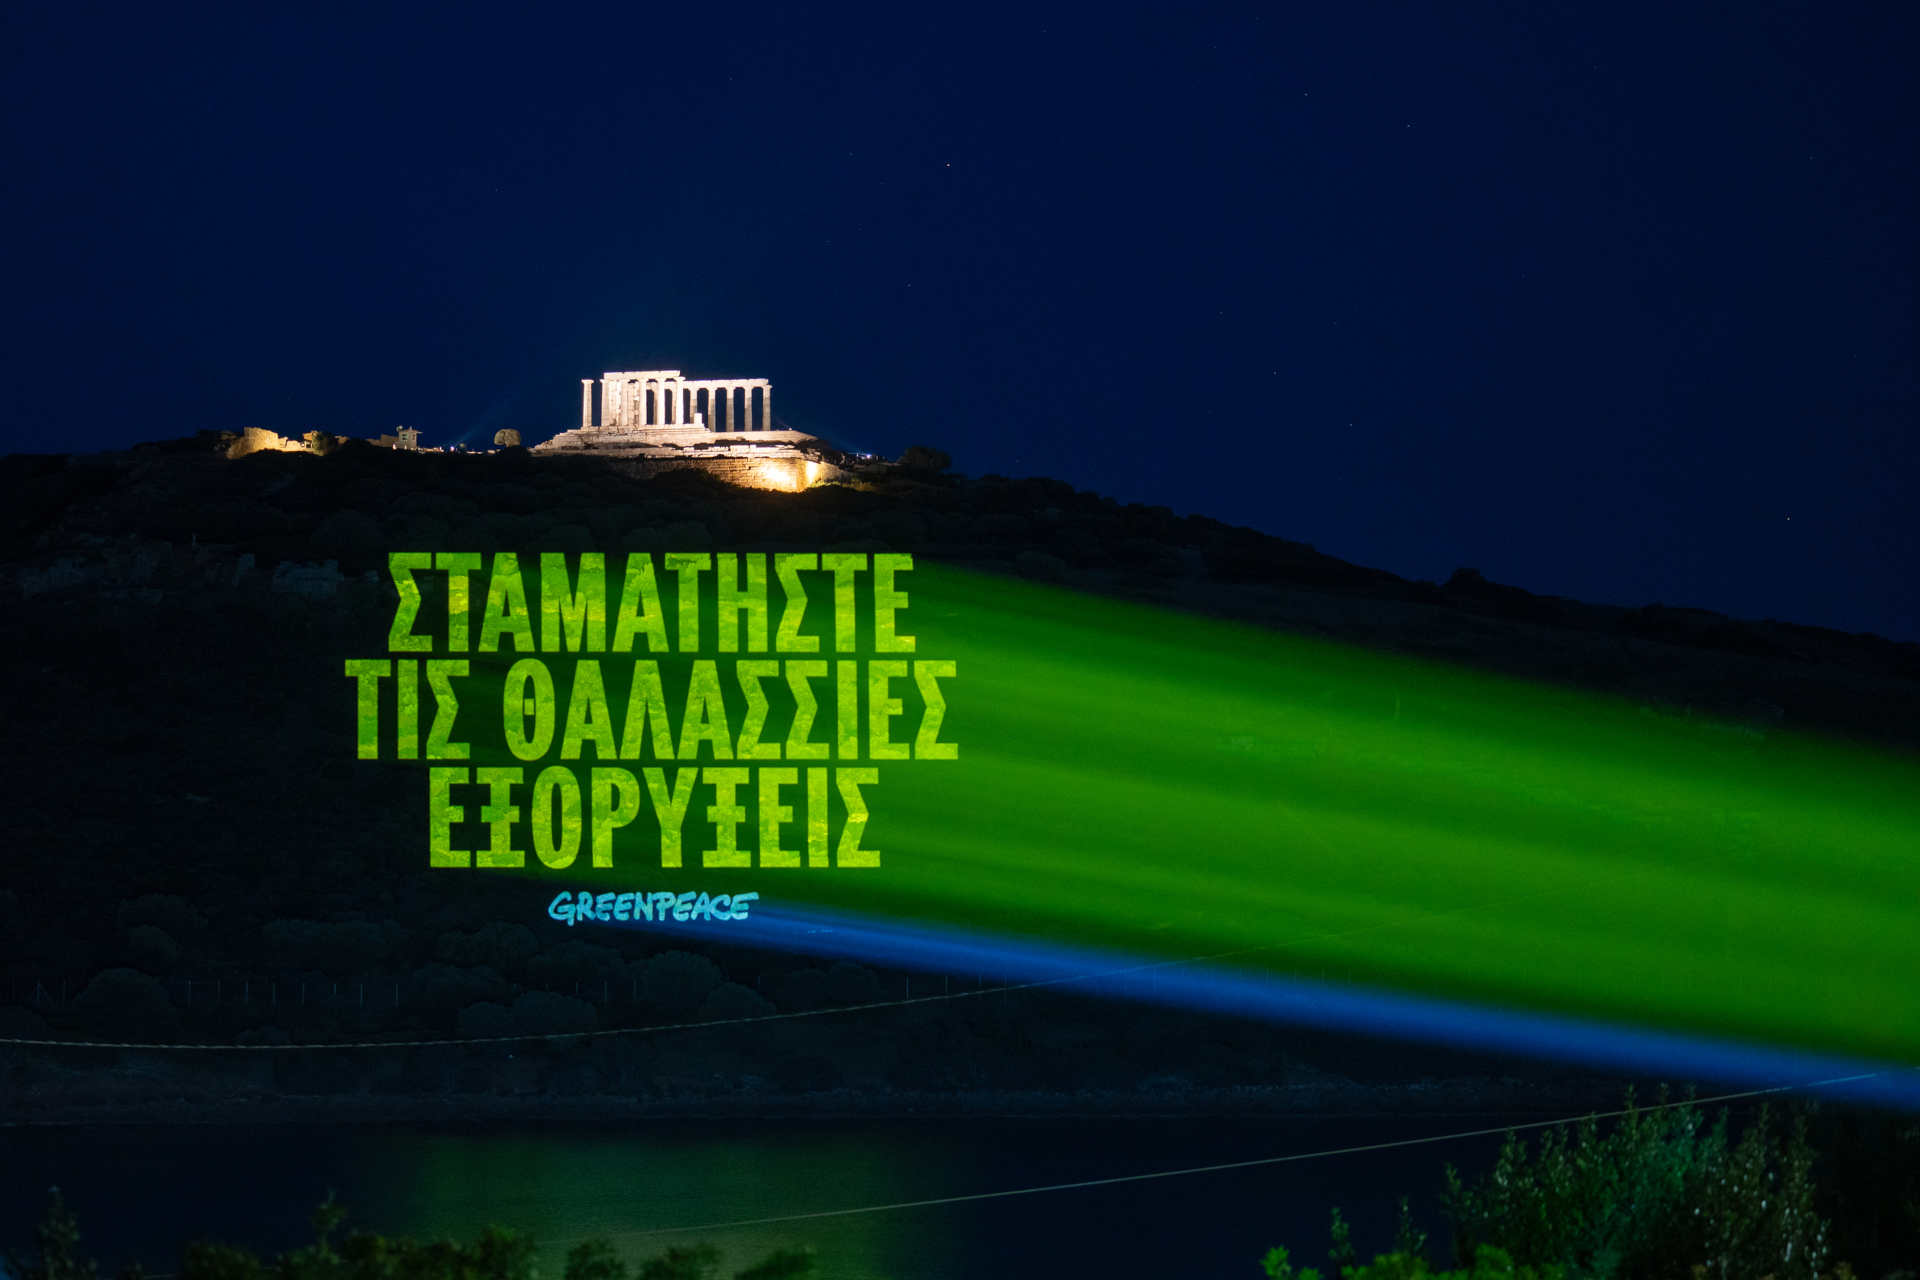 Grécko: správa v gréčtine, ktorá znie